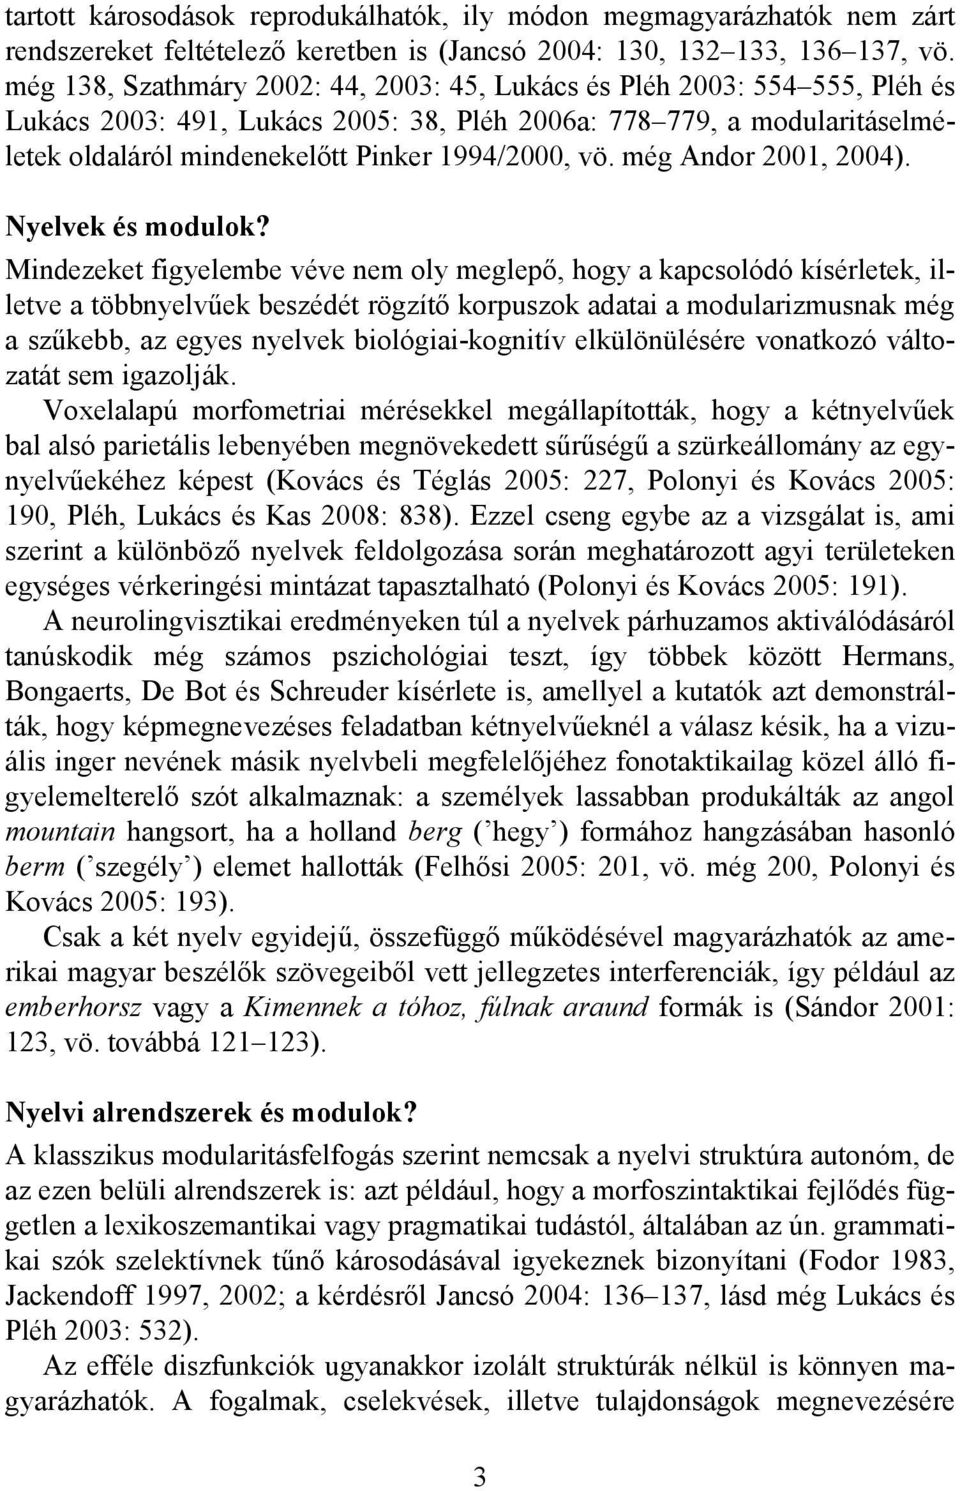 vö. még Andor 2001, 2004). Nyelvek és modulok?